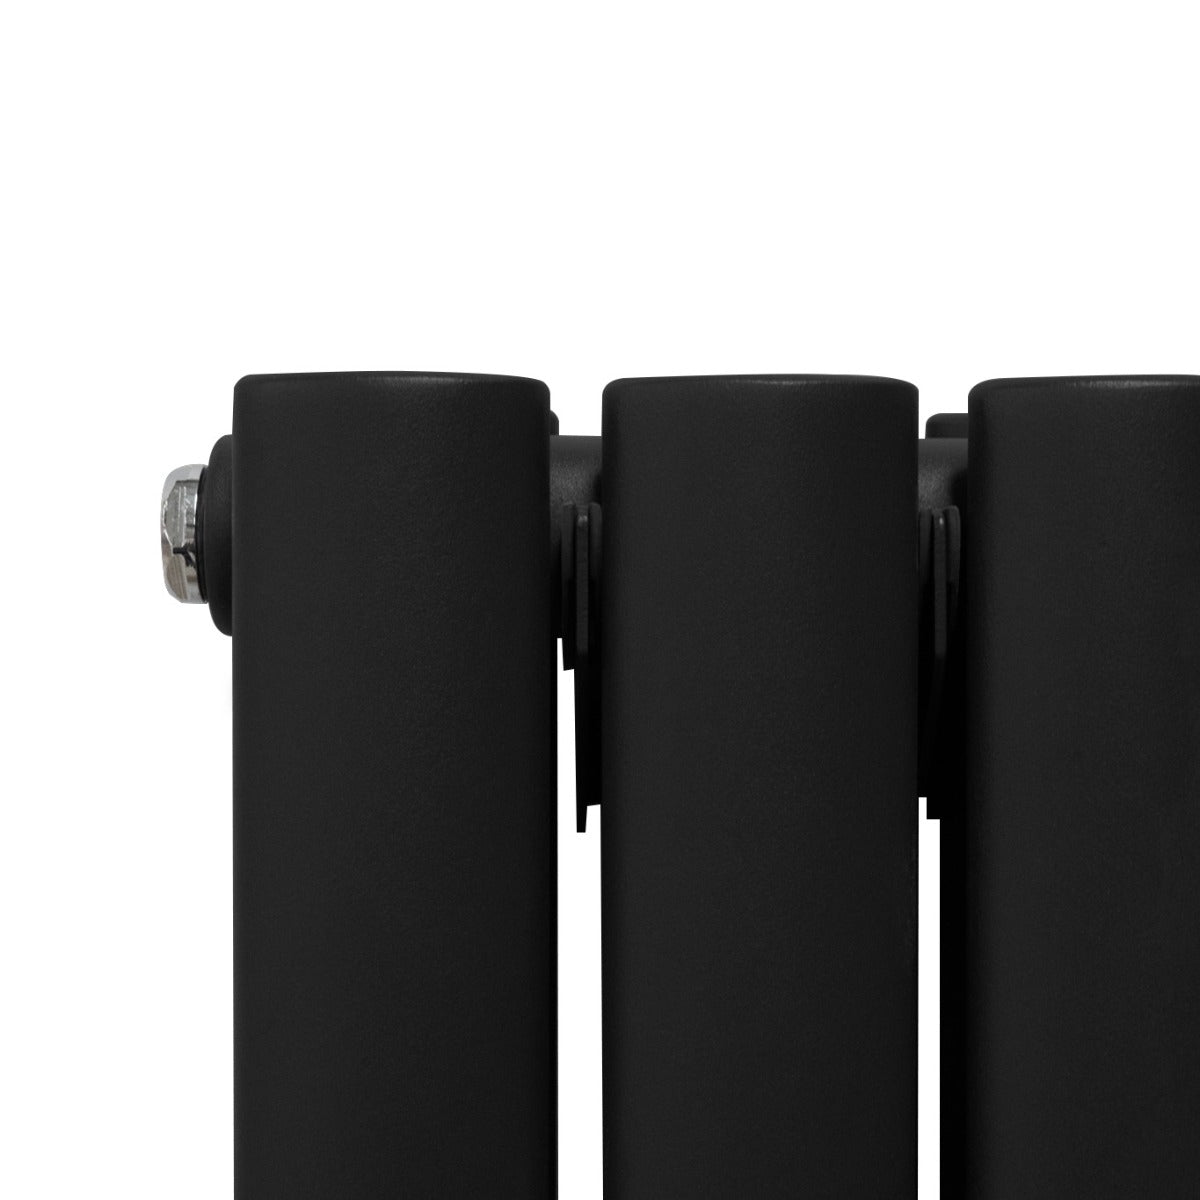 Radiador de Columna Ovalada con Espejo y Válvulas - 1800 mm x 380 mm - Negro